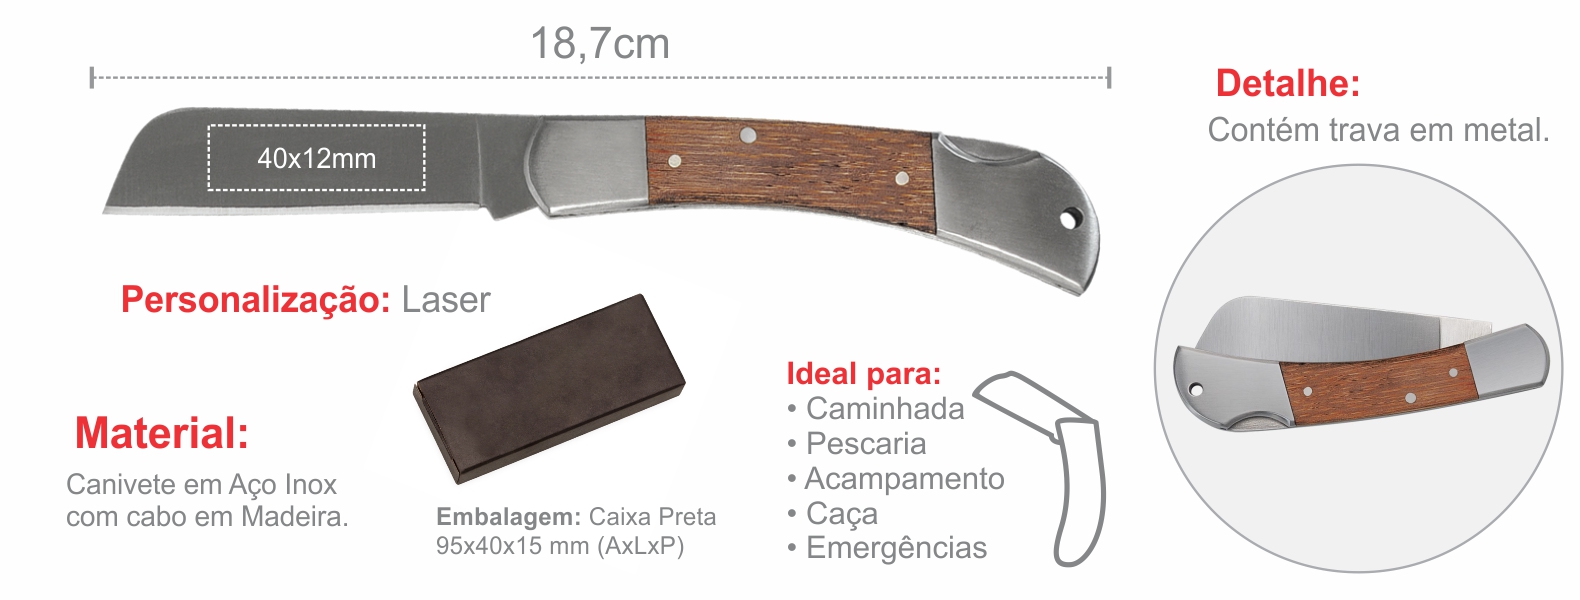 Canivete em Aço Inox com cabo em Madeira.